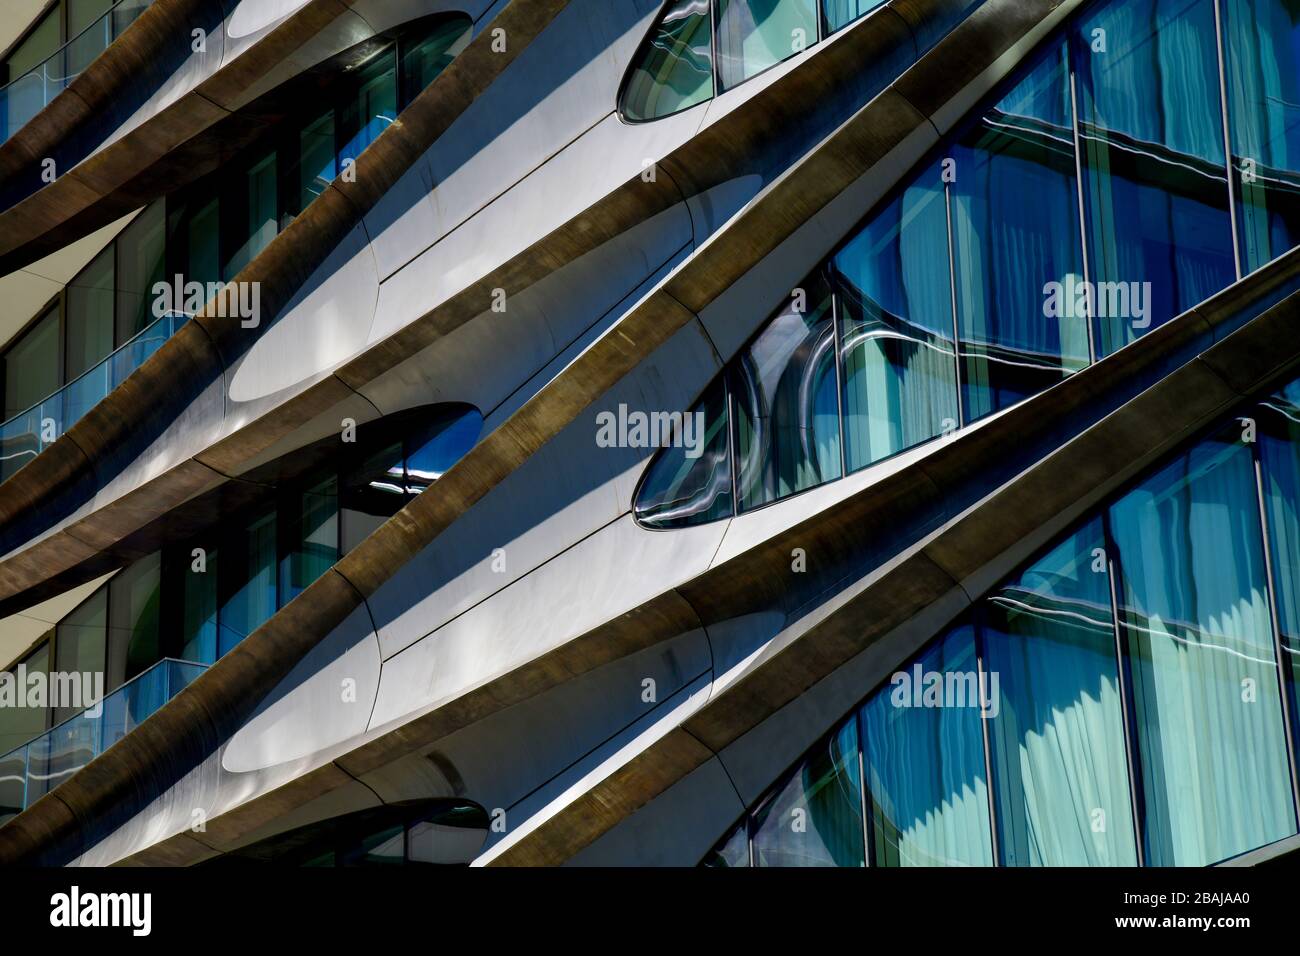 New York City, États-Unis-septembre 2019; vue rapprochée de la façade du bâtiment moderne de New York offrant un joli résumé en raison des lignes fluides et c Banque D'Images